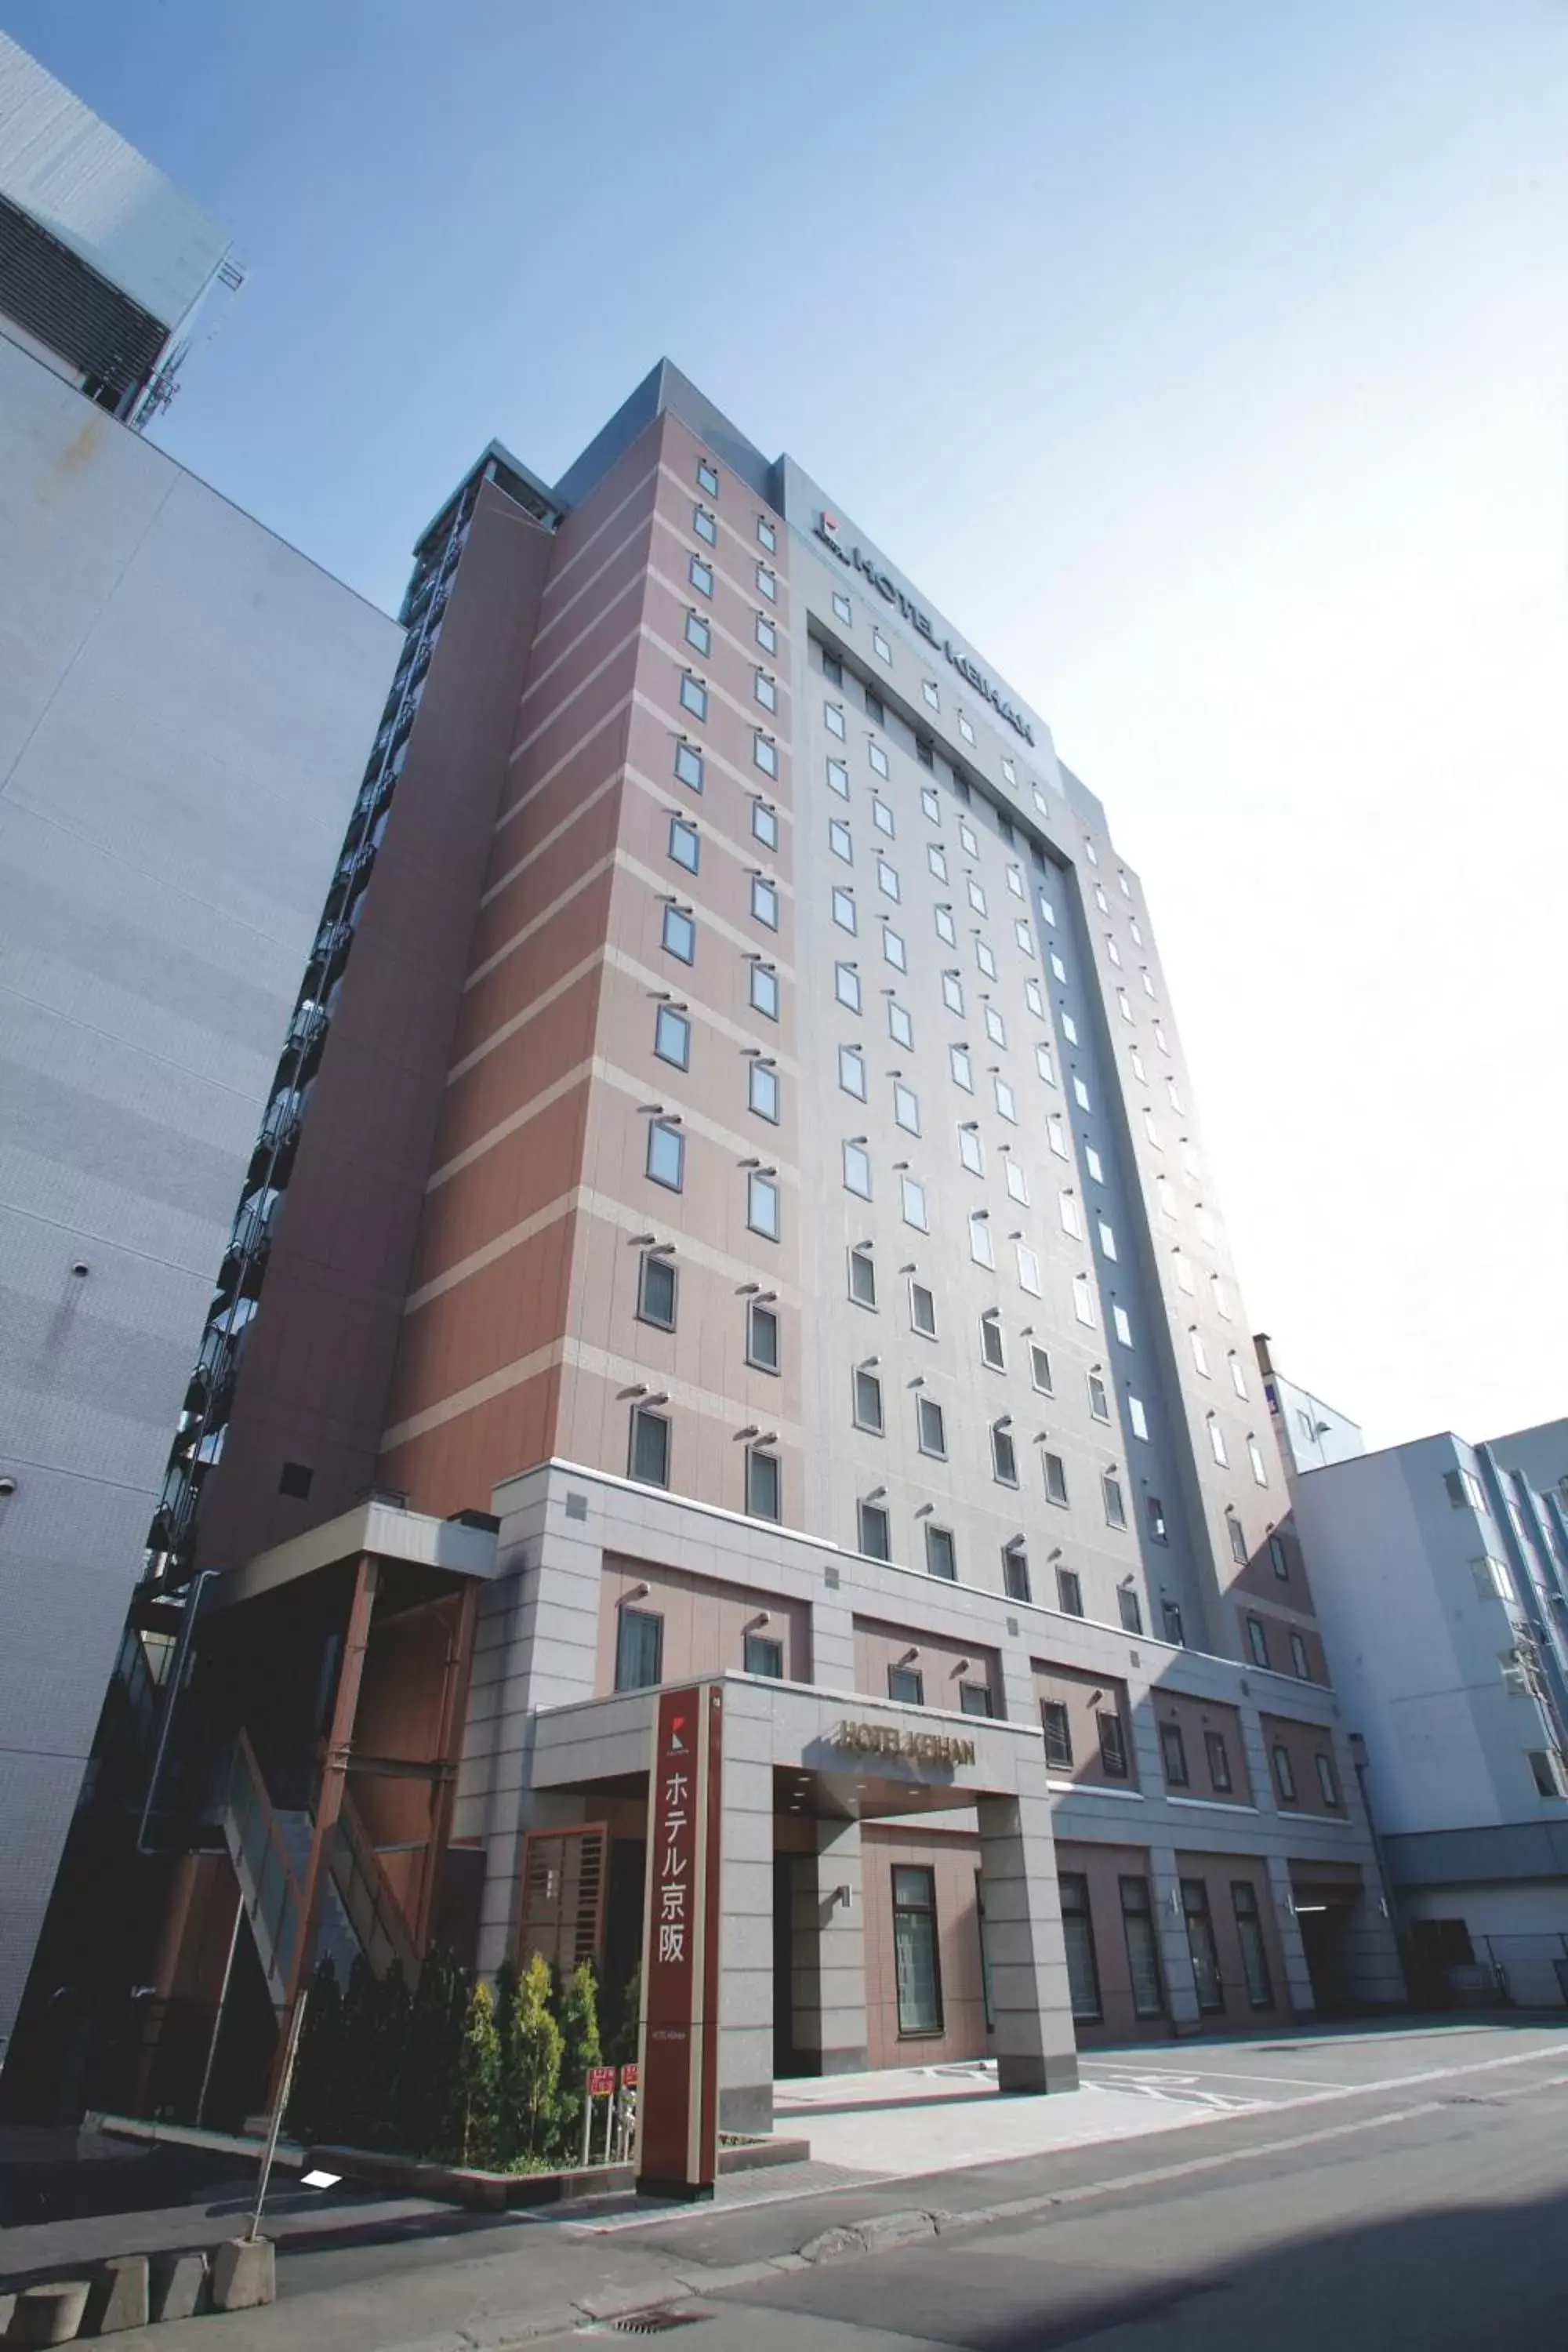 Facade/entrance, Property Building in Hotel Keihan Sapporo